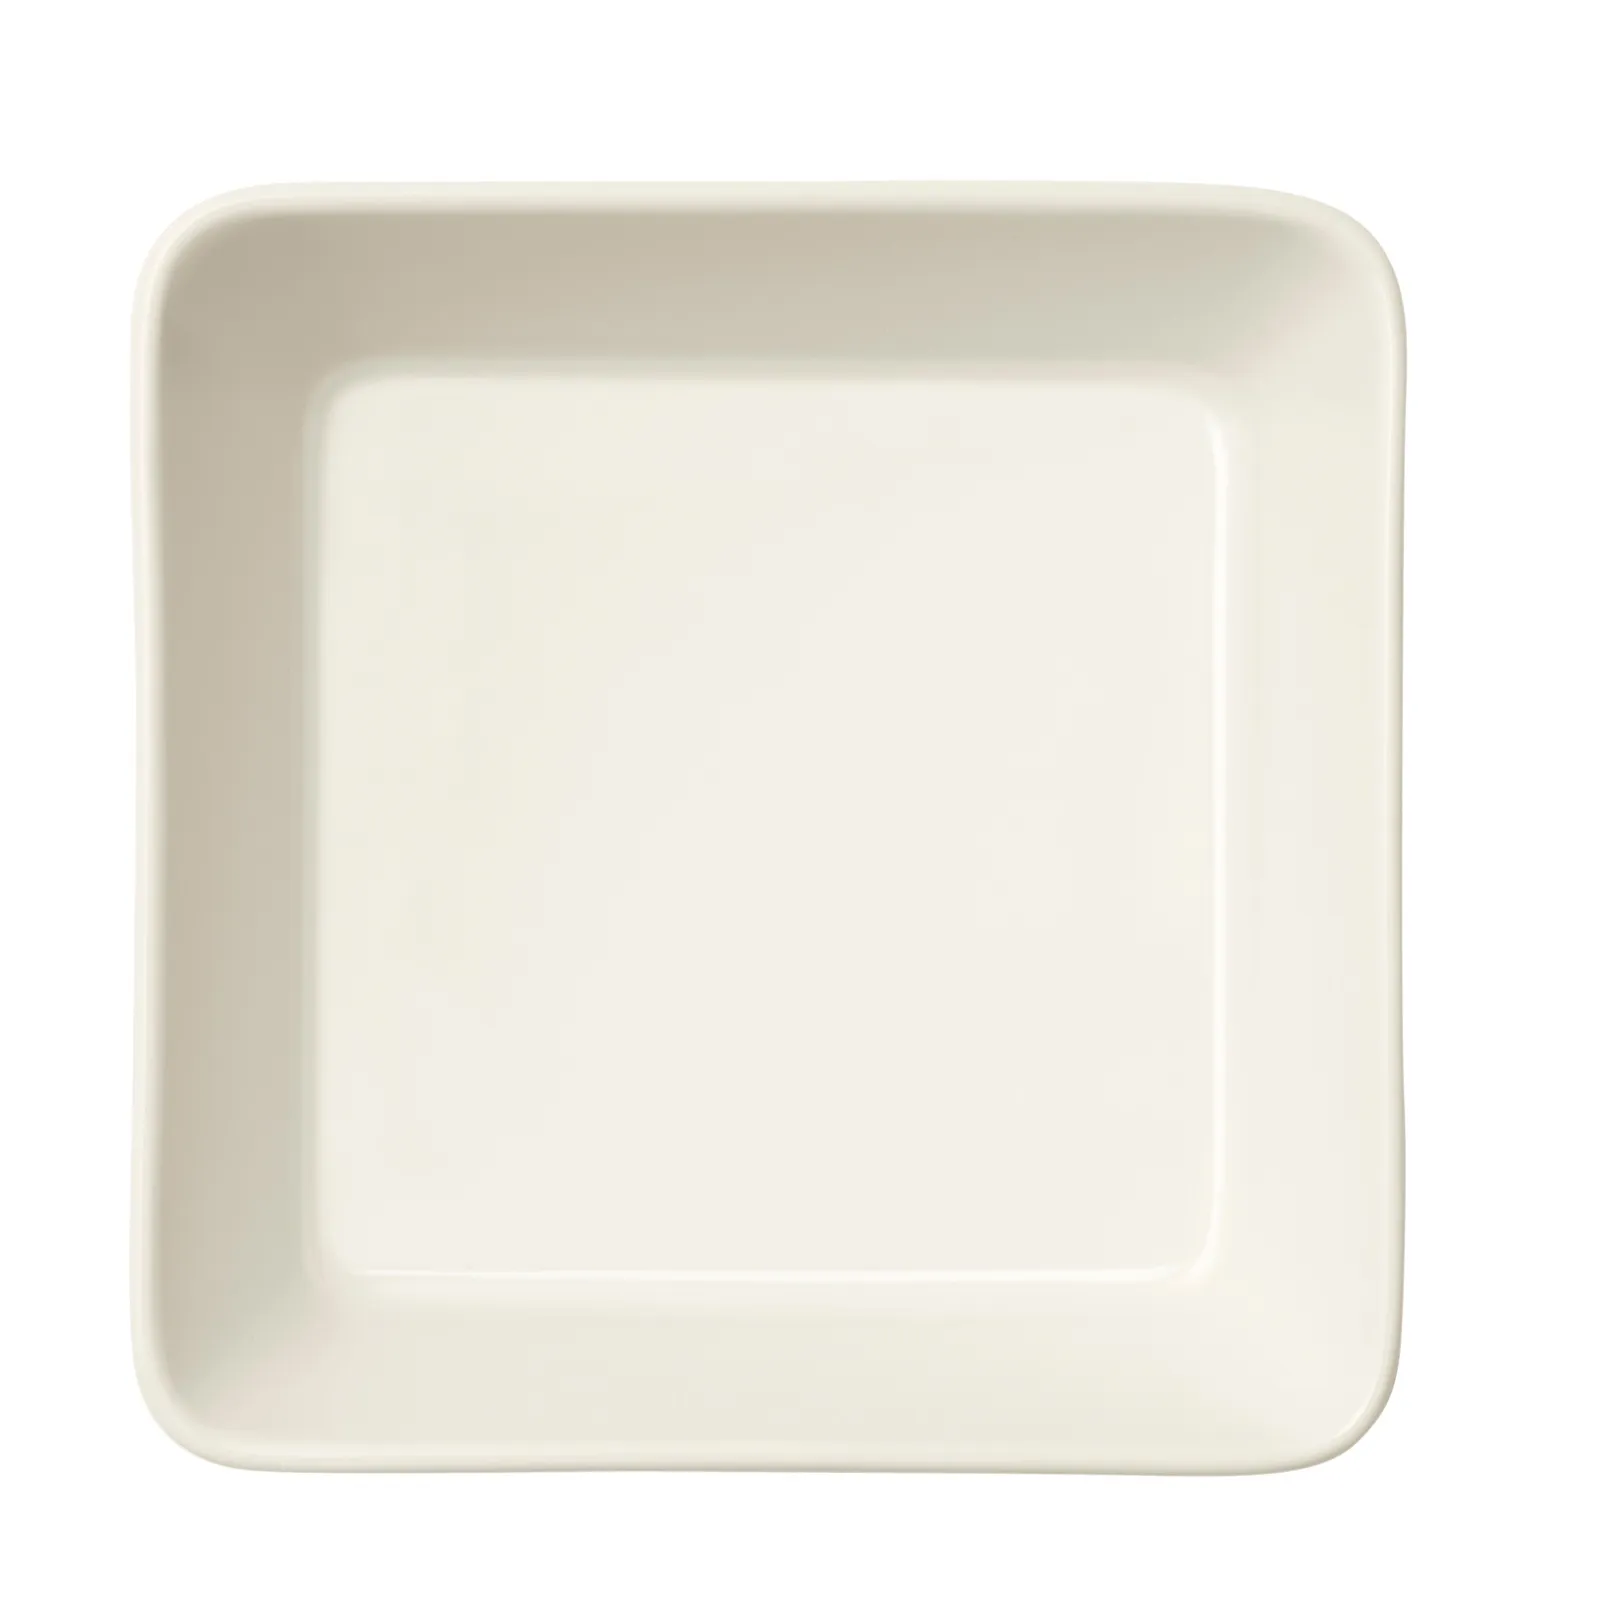 Iittala Teema dish 12x12cm white